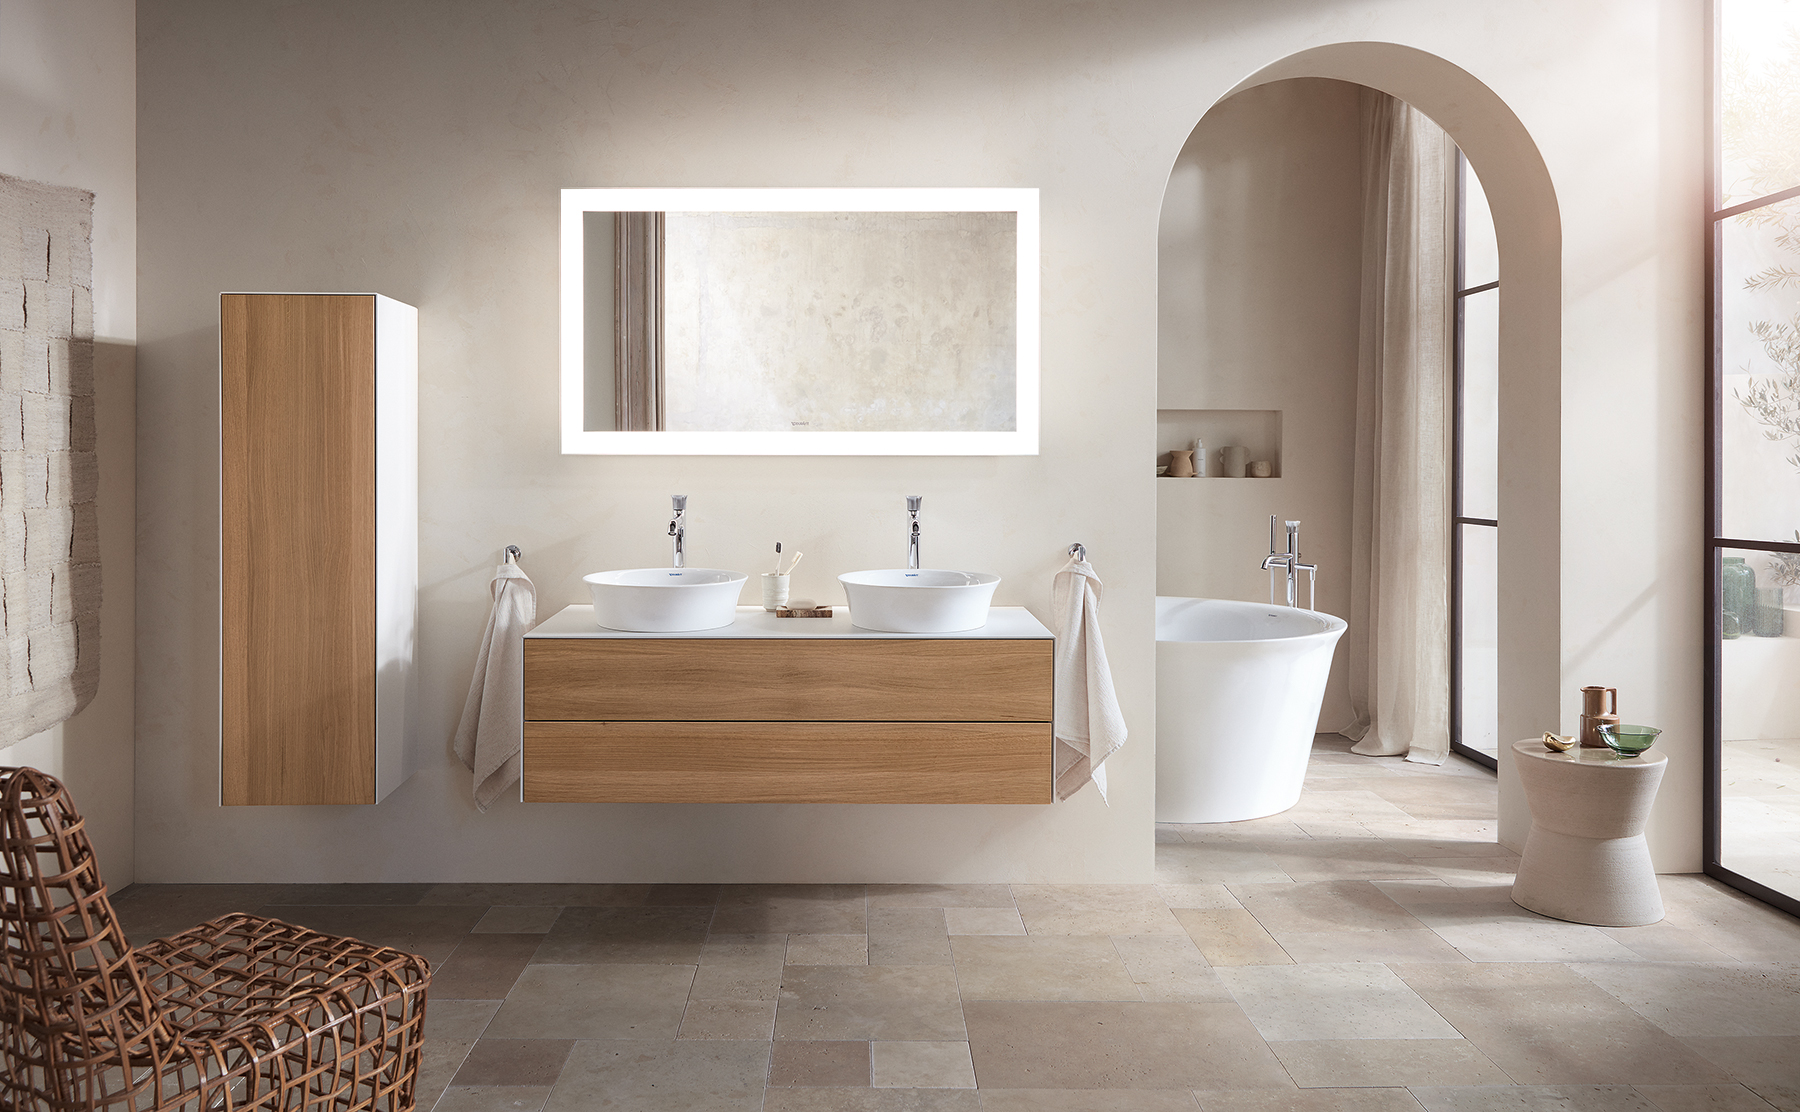 Bathroom trends – 18 inspiring styles for fresh new look | Livingetc |